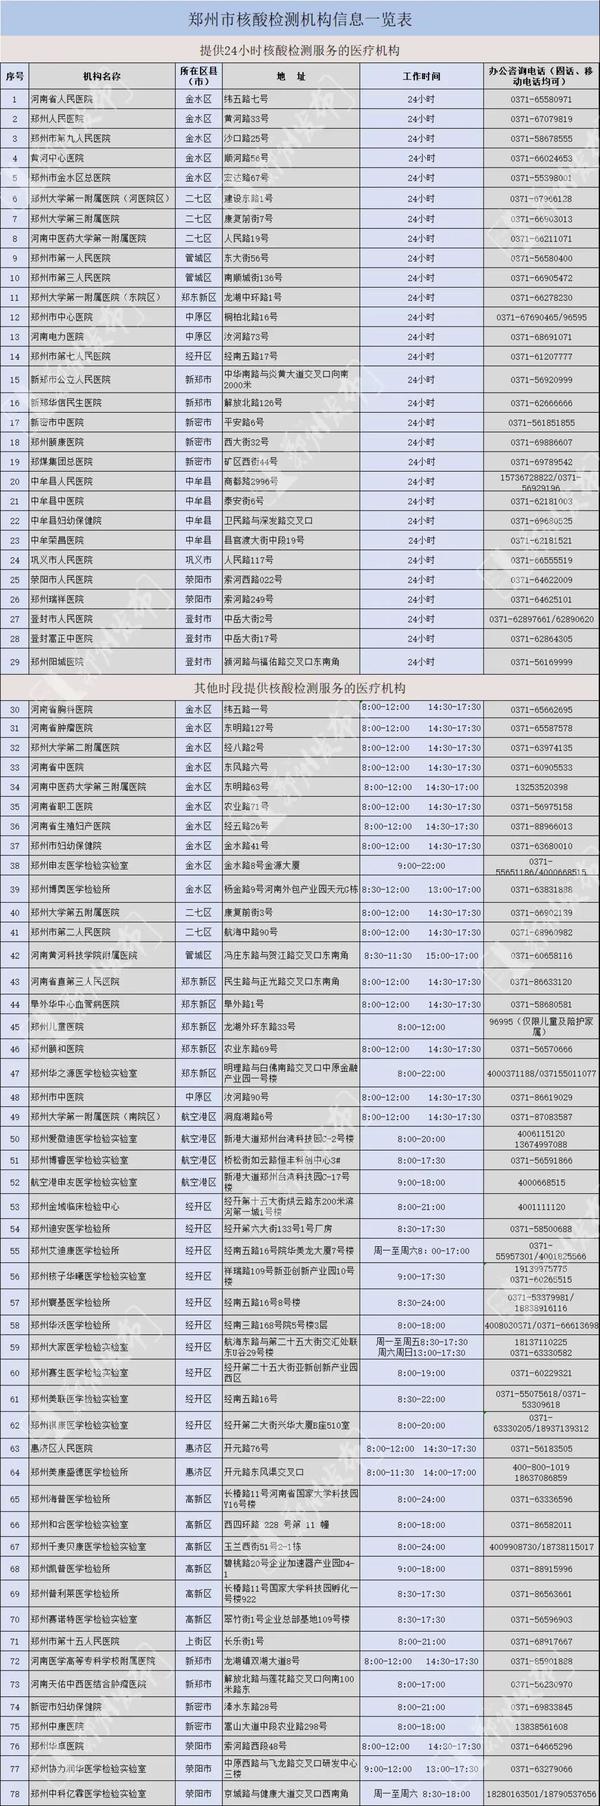 郑州24小时核酸检测点最新名单 哪些24小时开放？